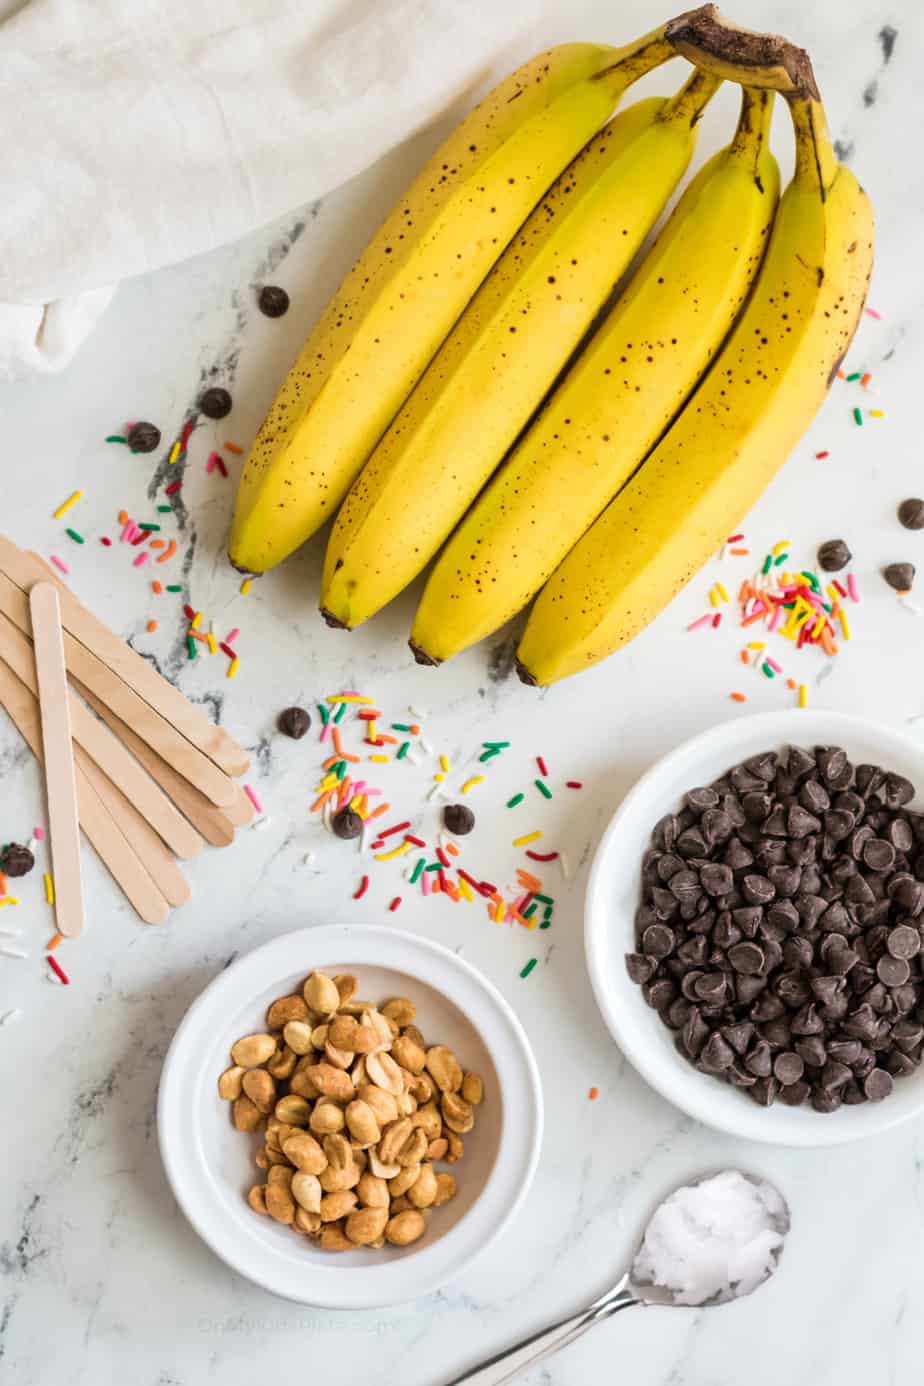 Ingredients for frozen banana pops